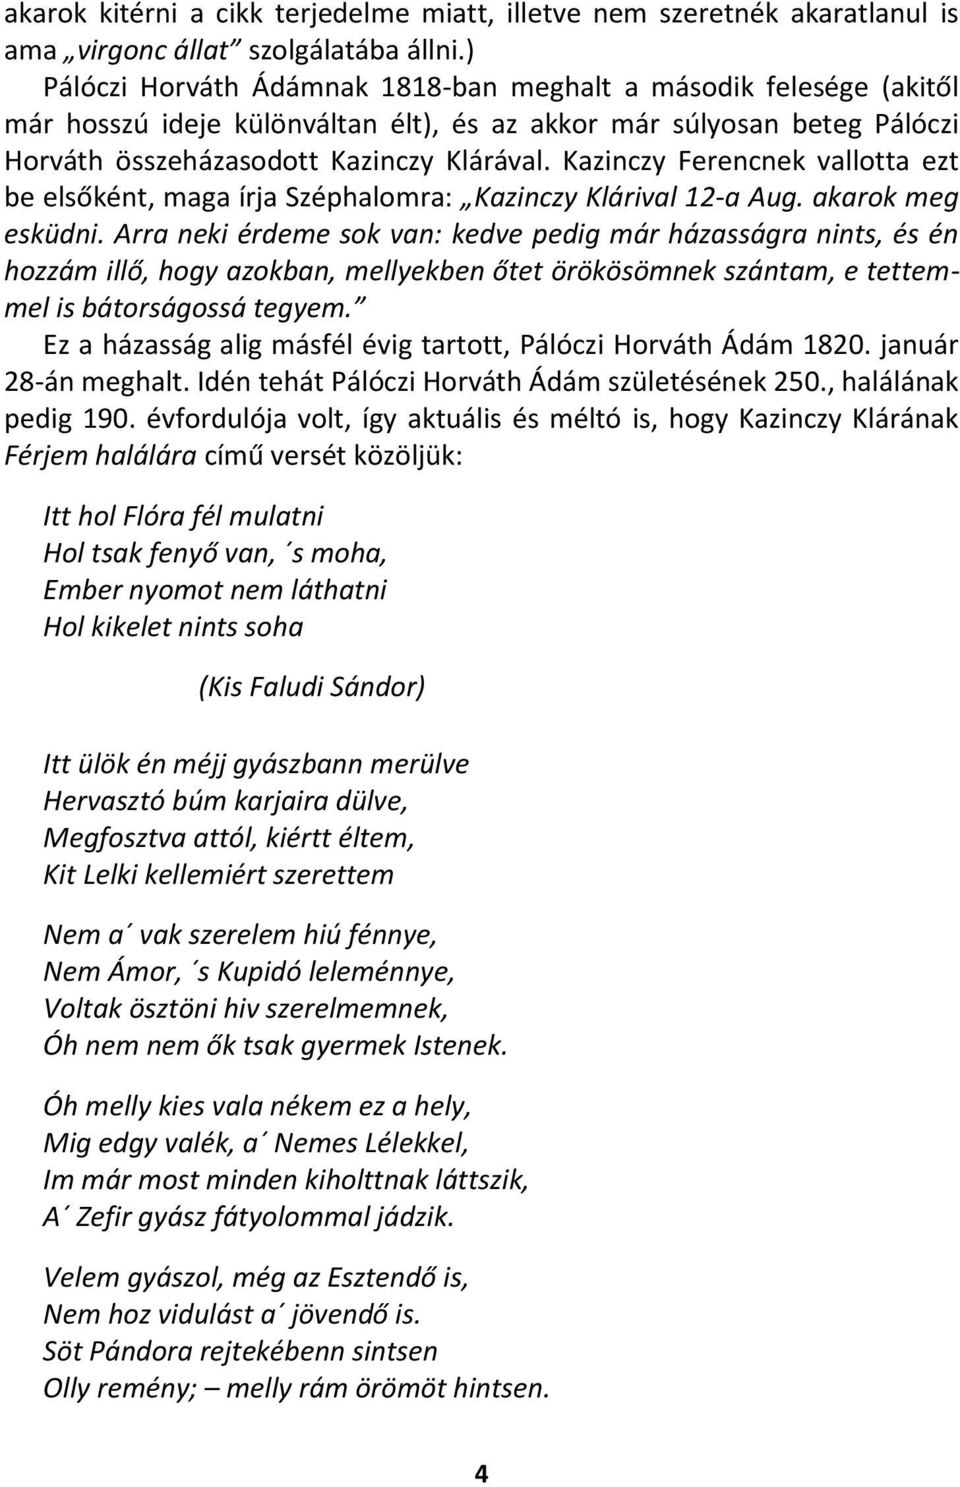 Kazinczy Ferencnek vallotta ezt be elsőként, maga írja Széphalomra: Kazinczy Klárival 12-a Aug. akarok meg esküdni.